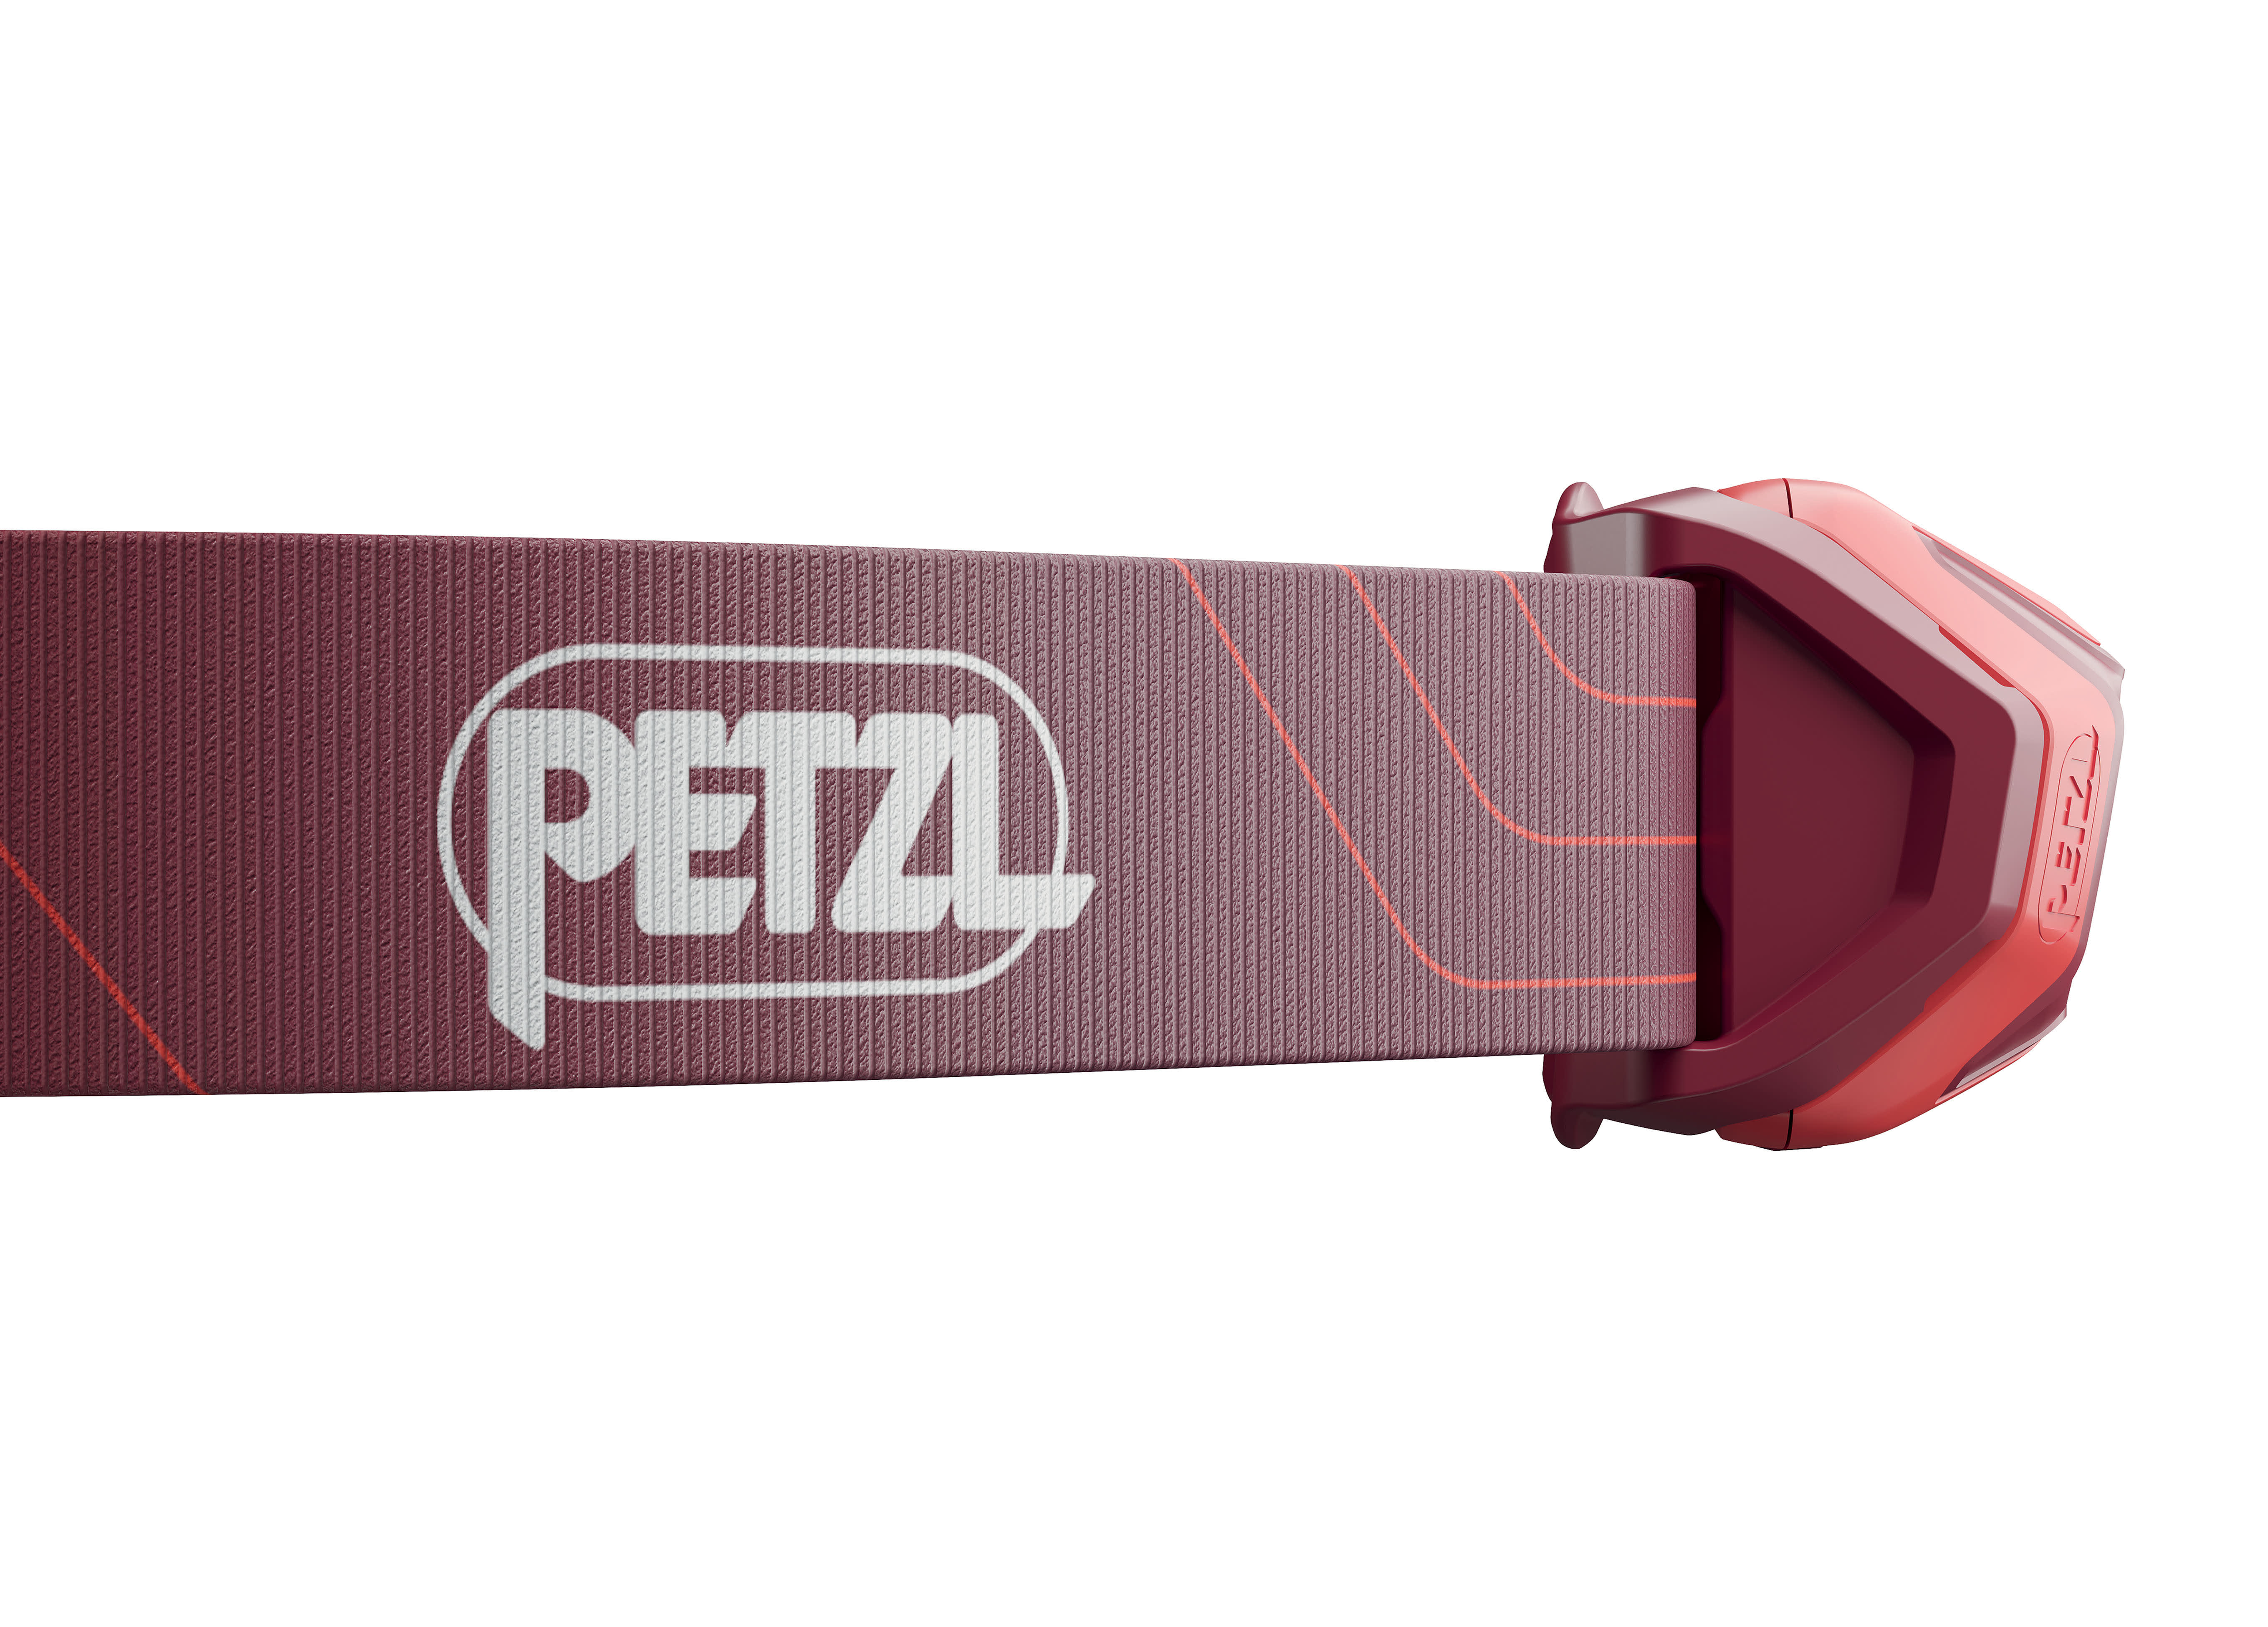 Petzl® Tikkina 300 Lumen Headlamp - Red